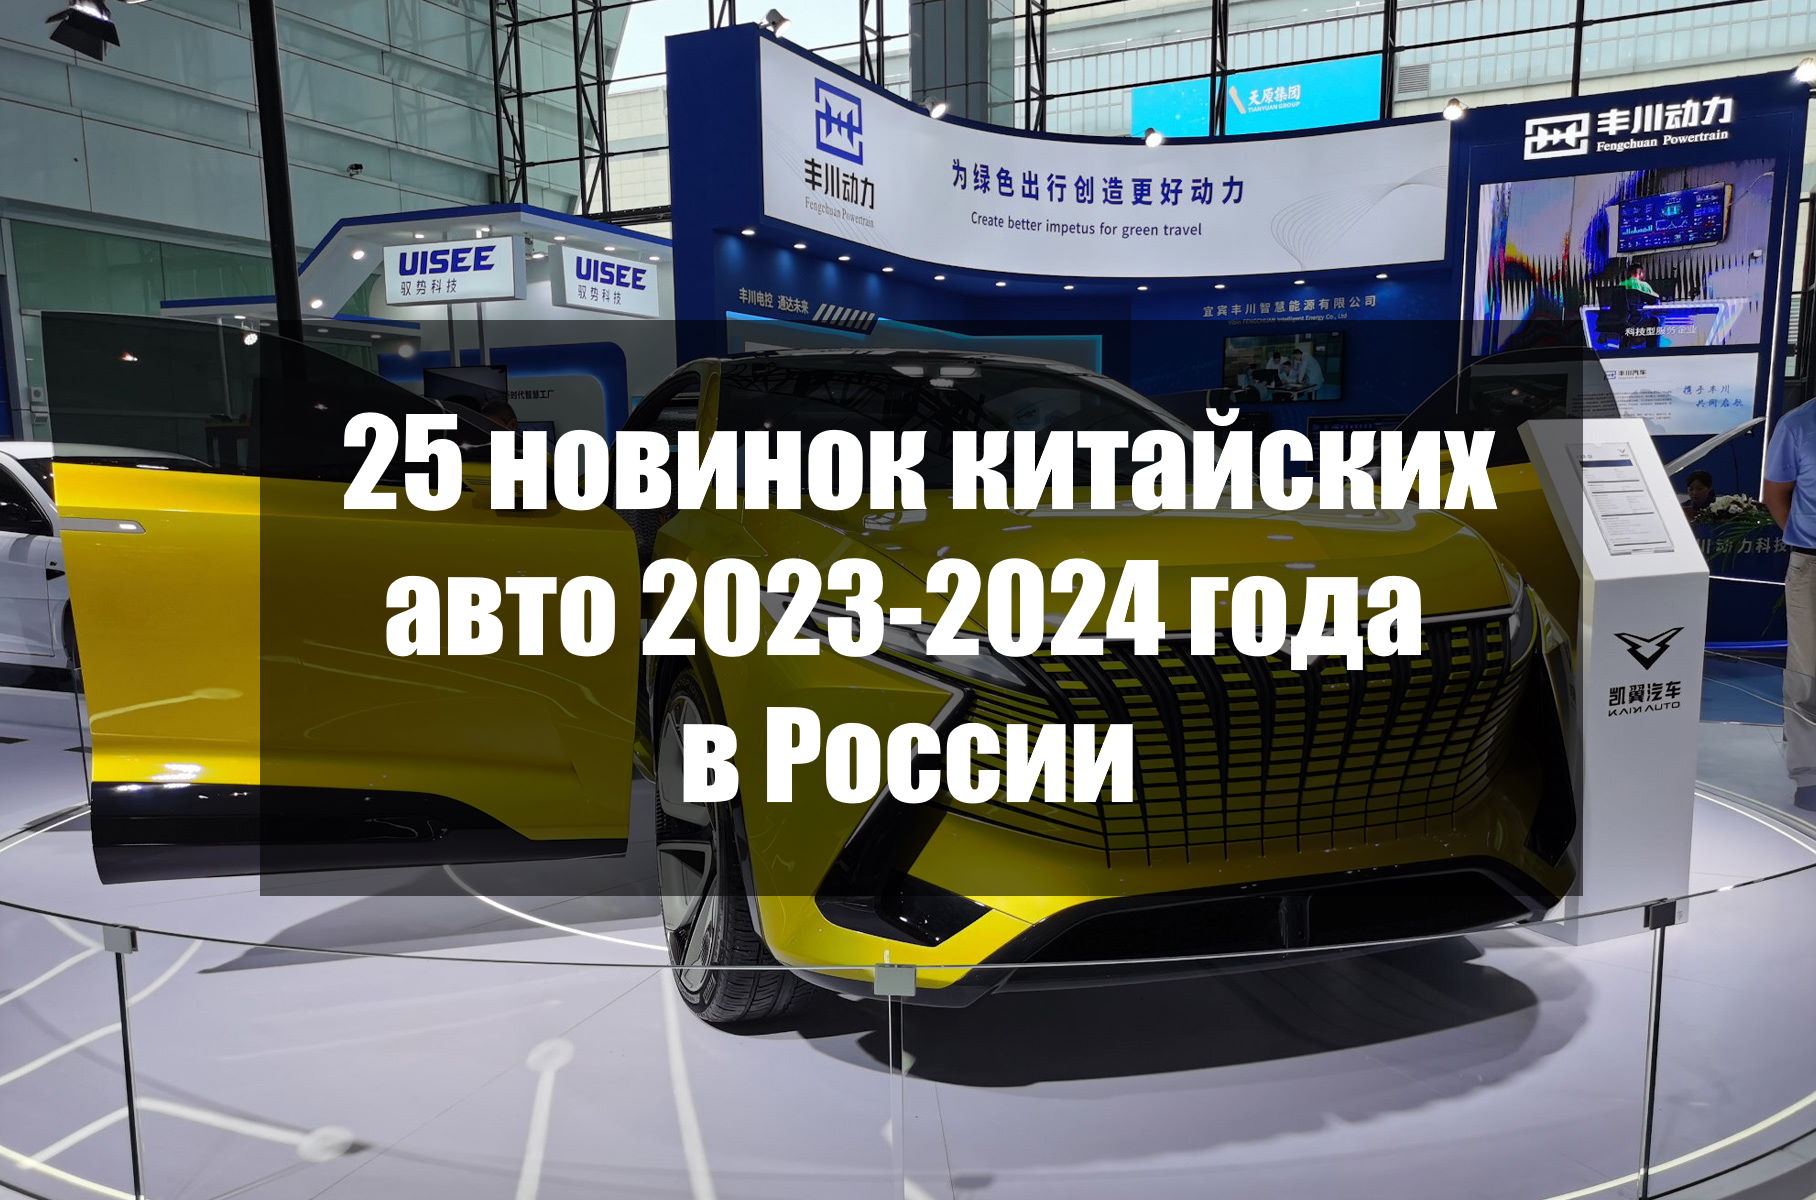 25 новинок китайских авто 2023-2024 года в России